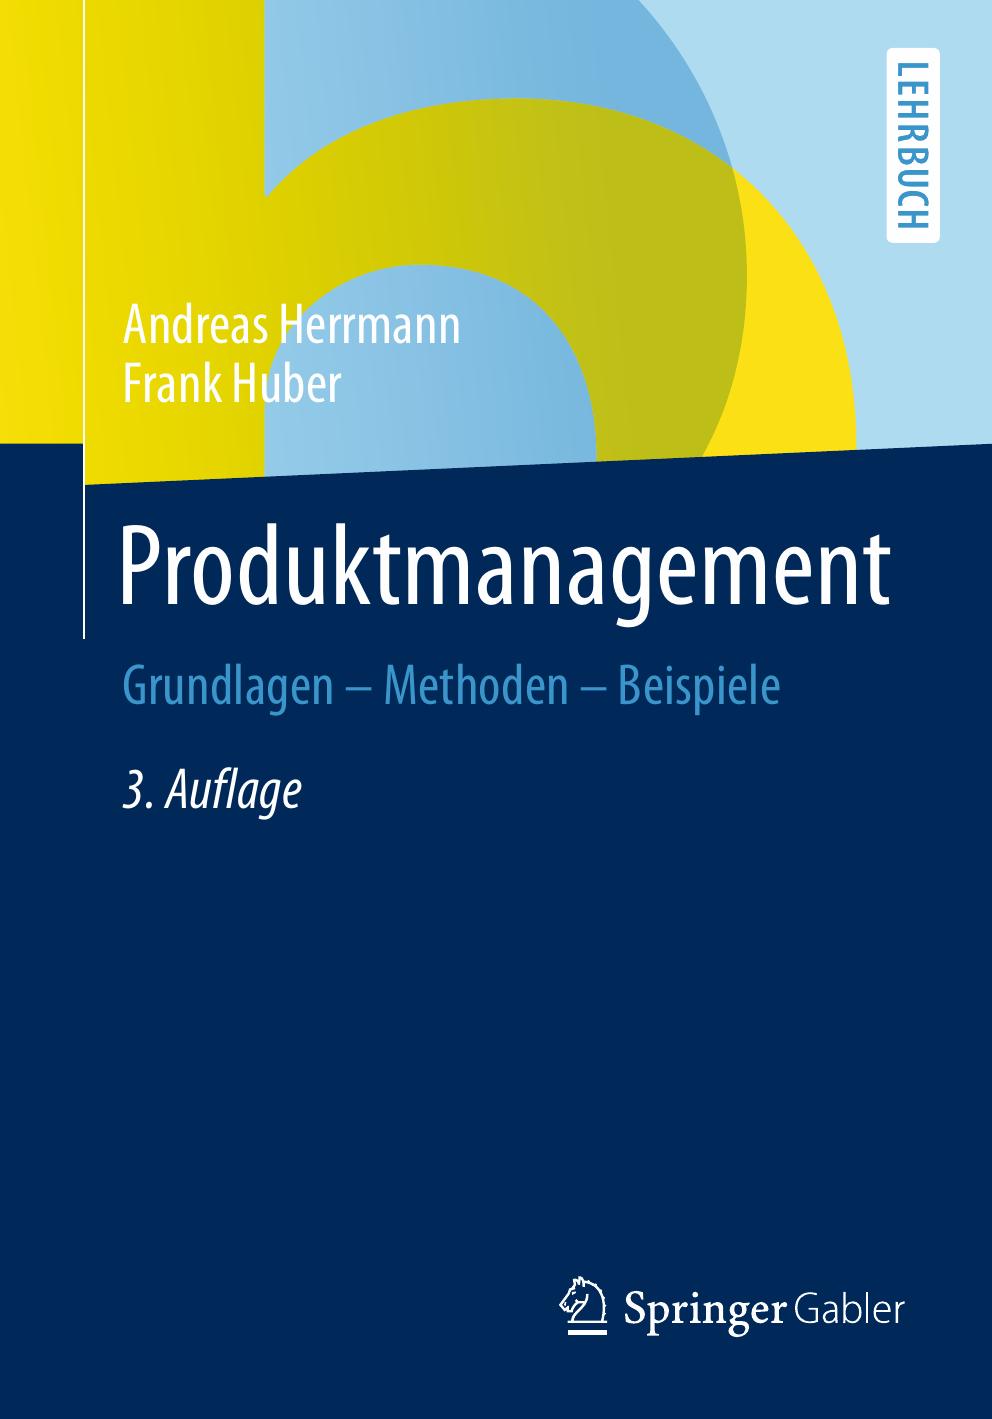 Produktmanagement: Grundlagen - Methoden - Beispiele